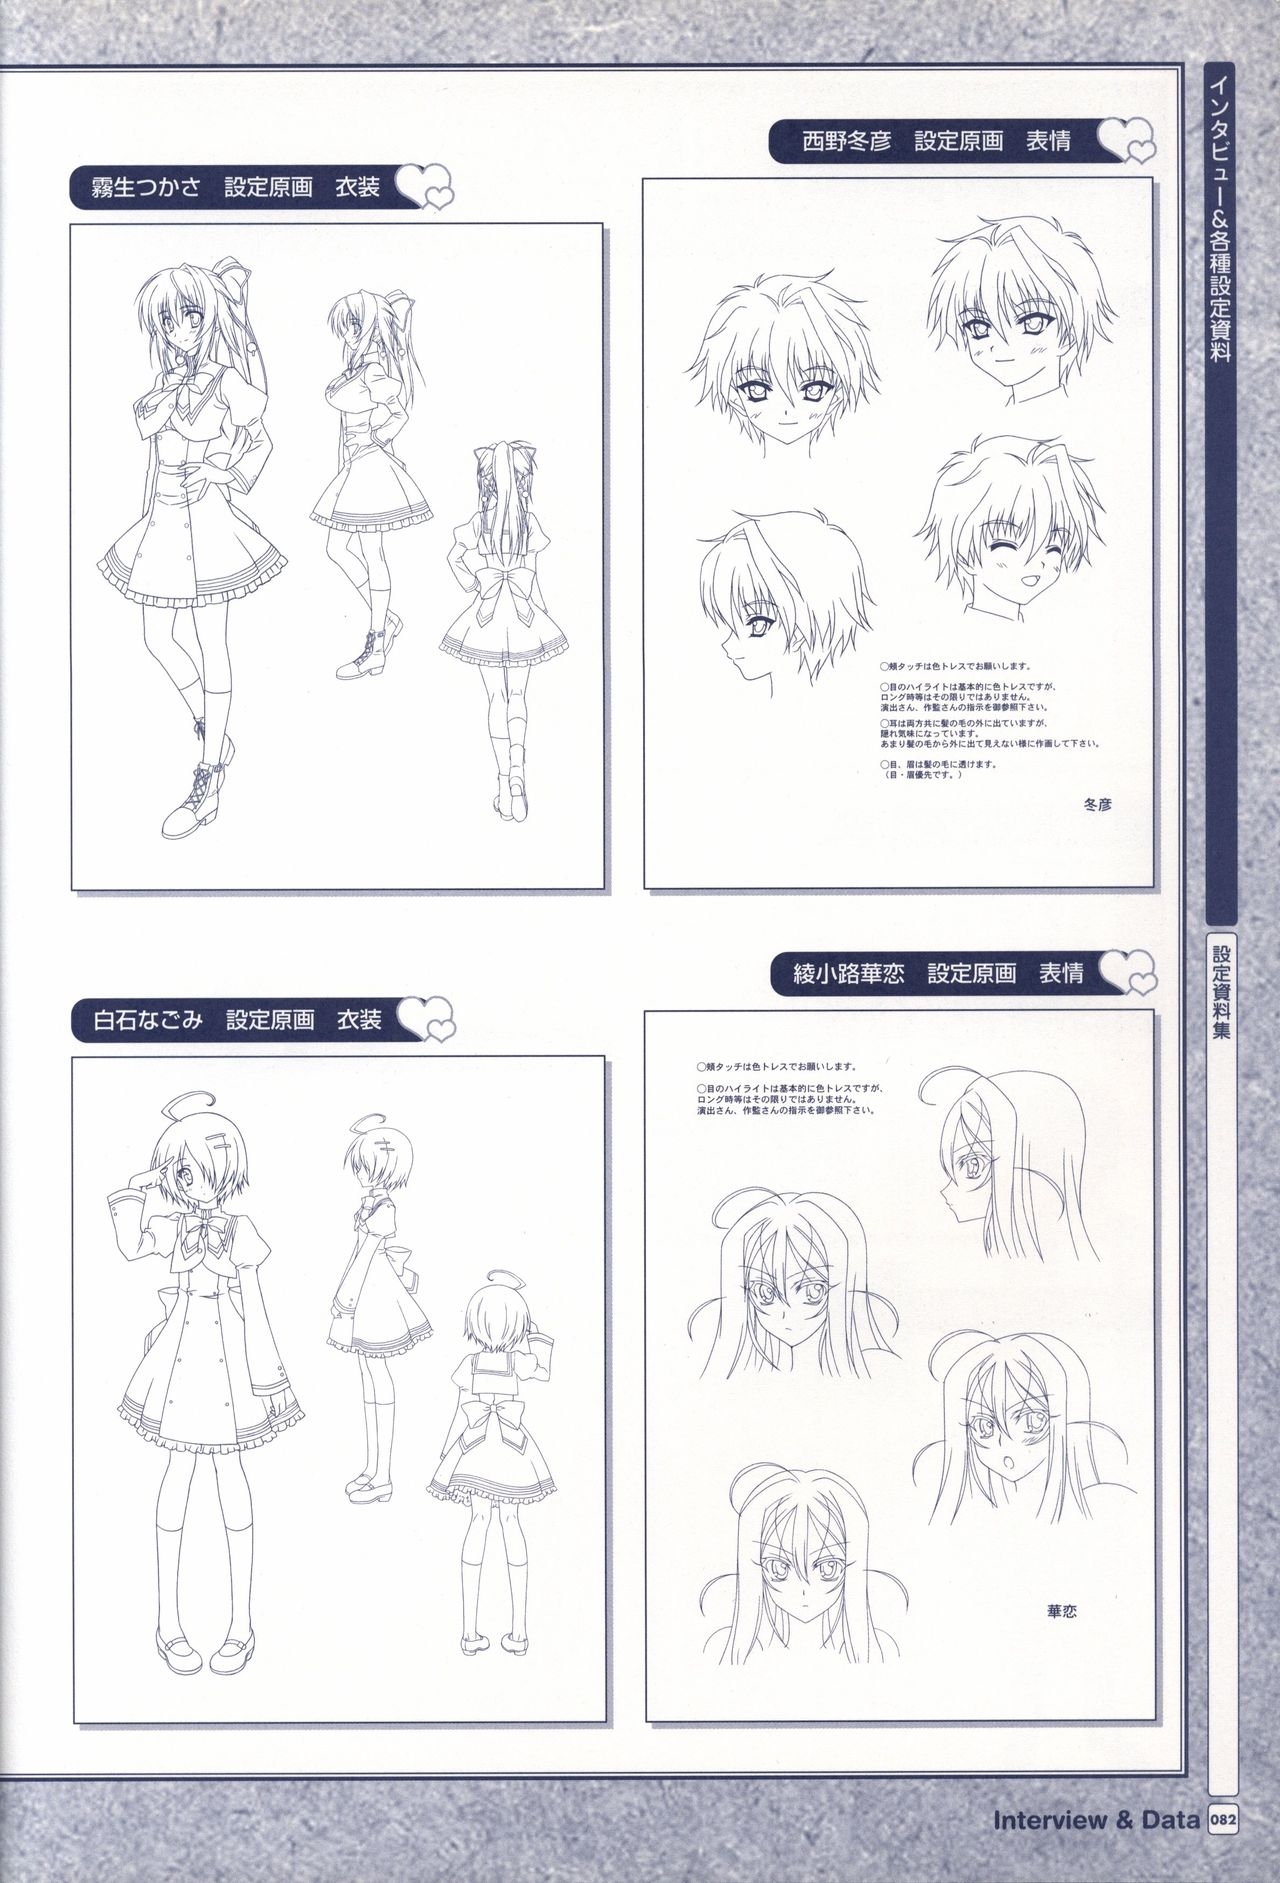 TV ANIME Akaneiro ni Somaru Saka Visual Guide Book 82